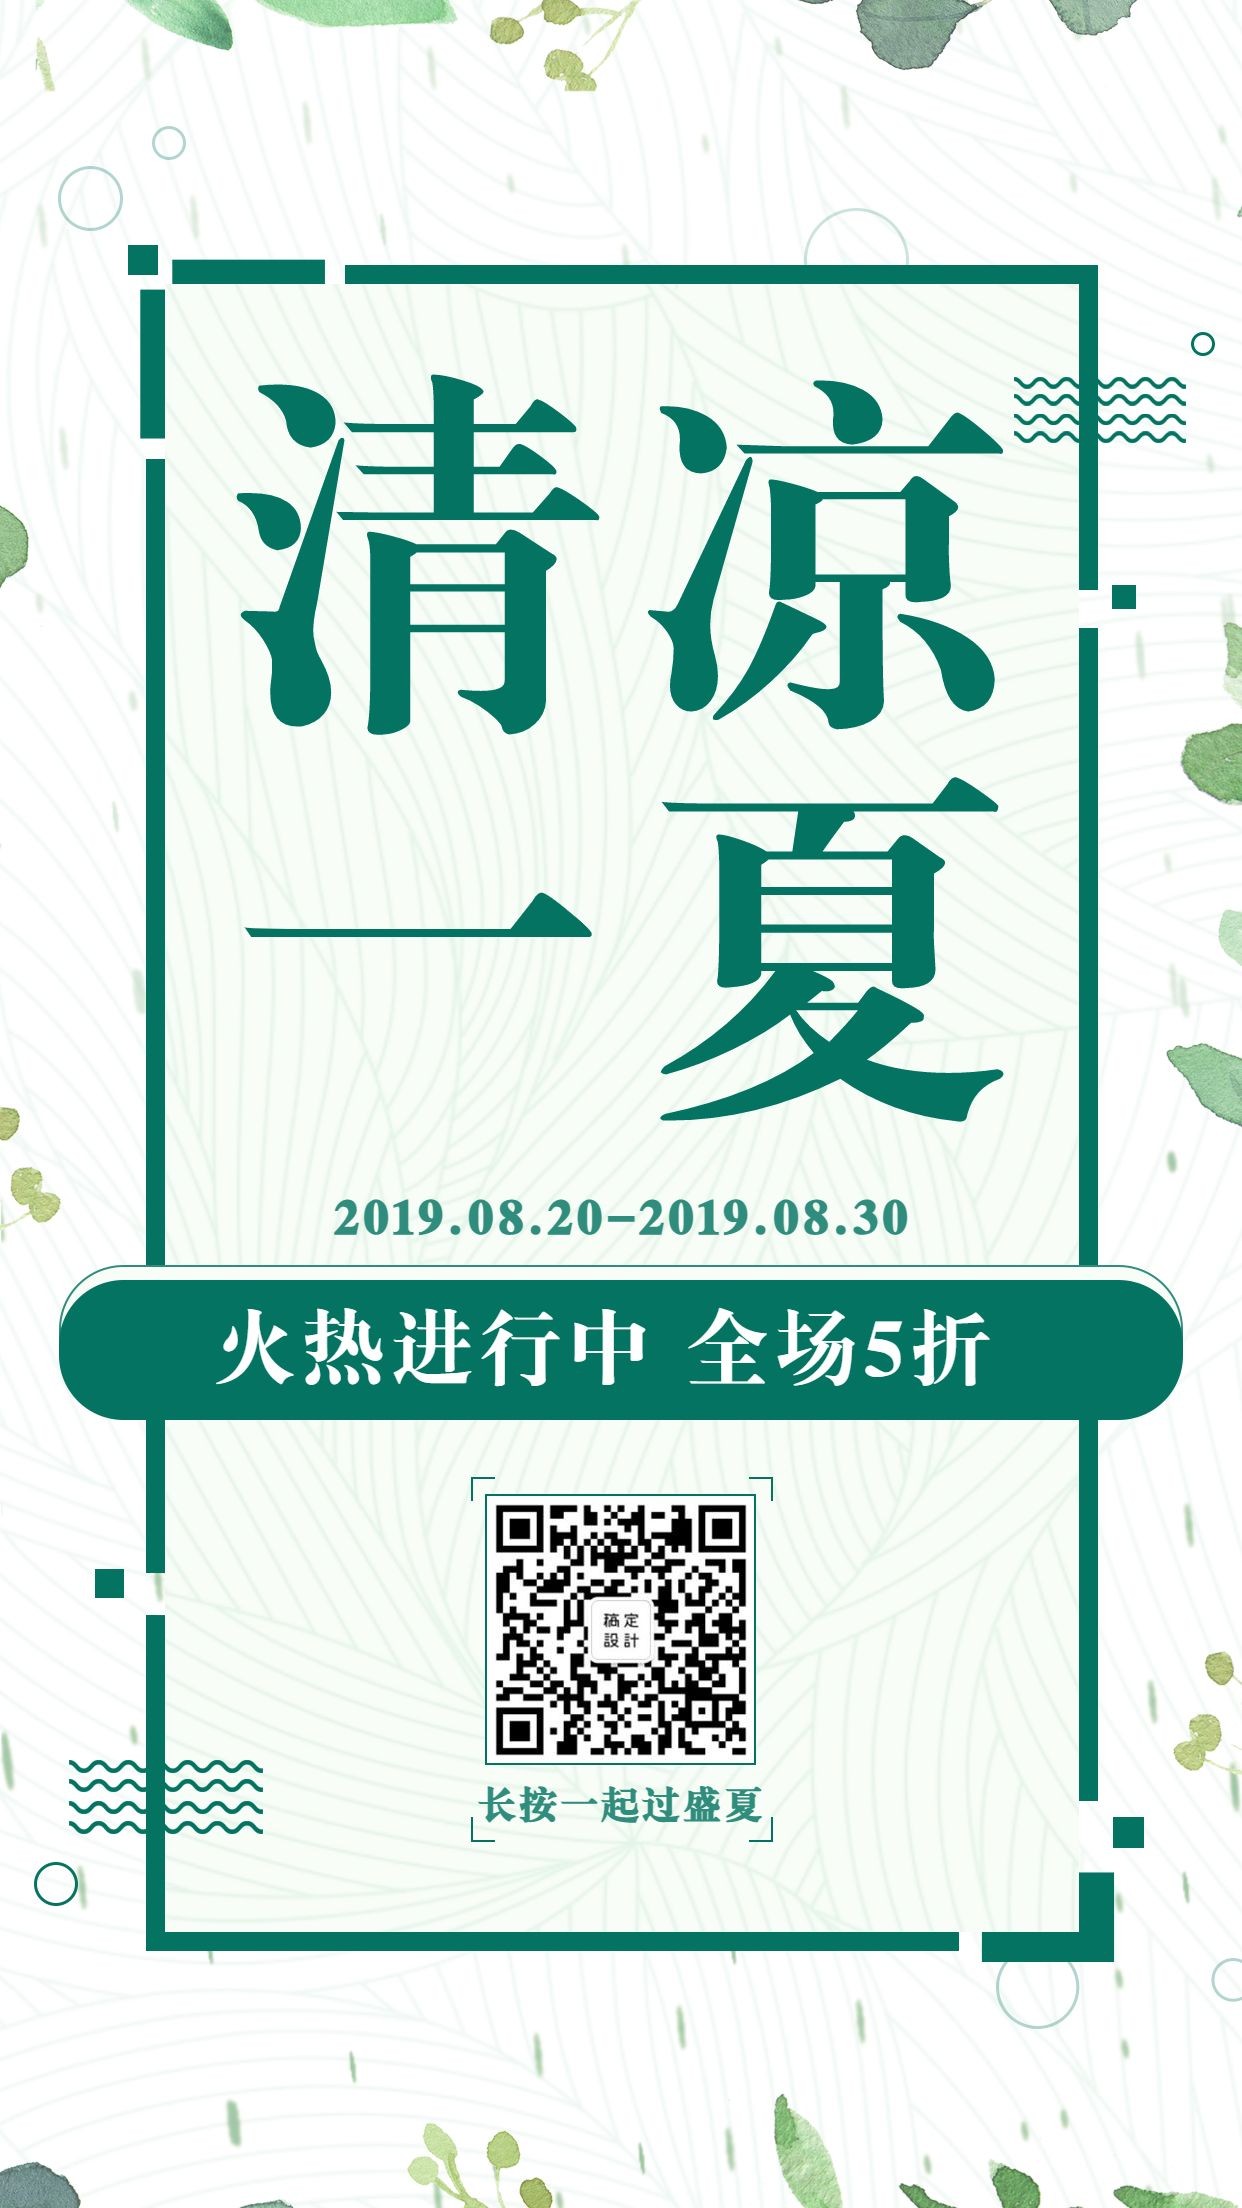 夏季清新简约促销活动手机海报